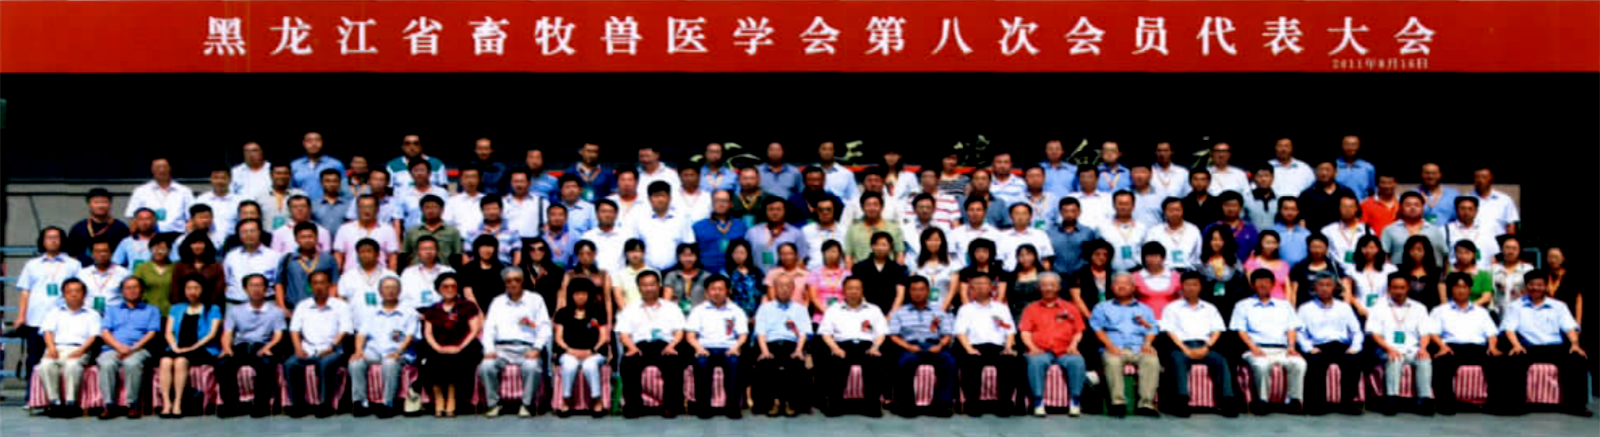 黑龍江省畜牧獸醫學會第八次會員代表大會